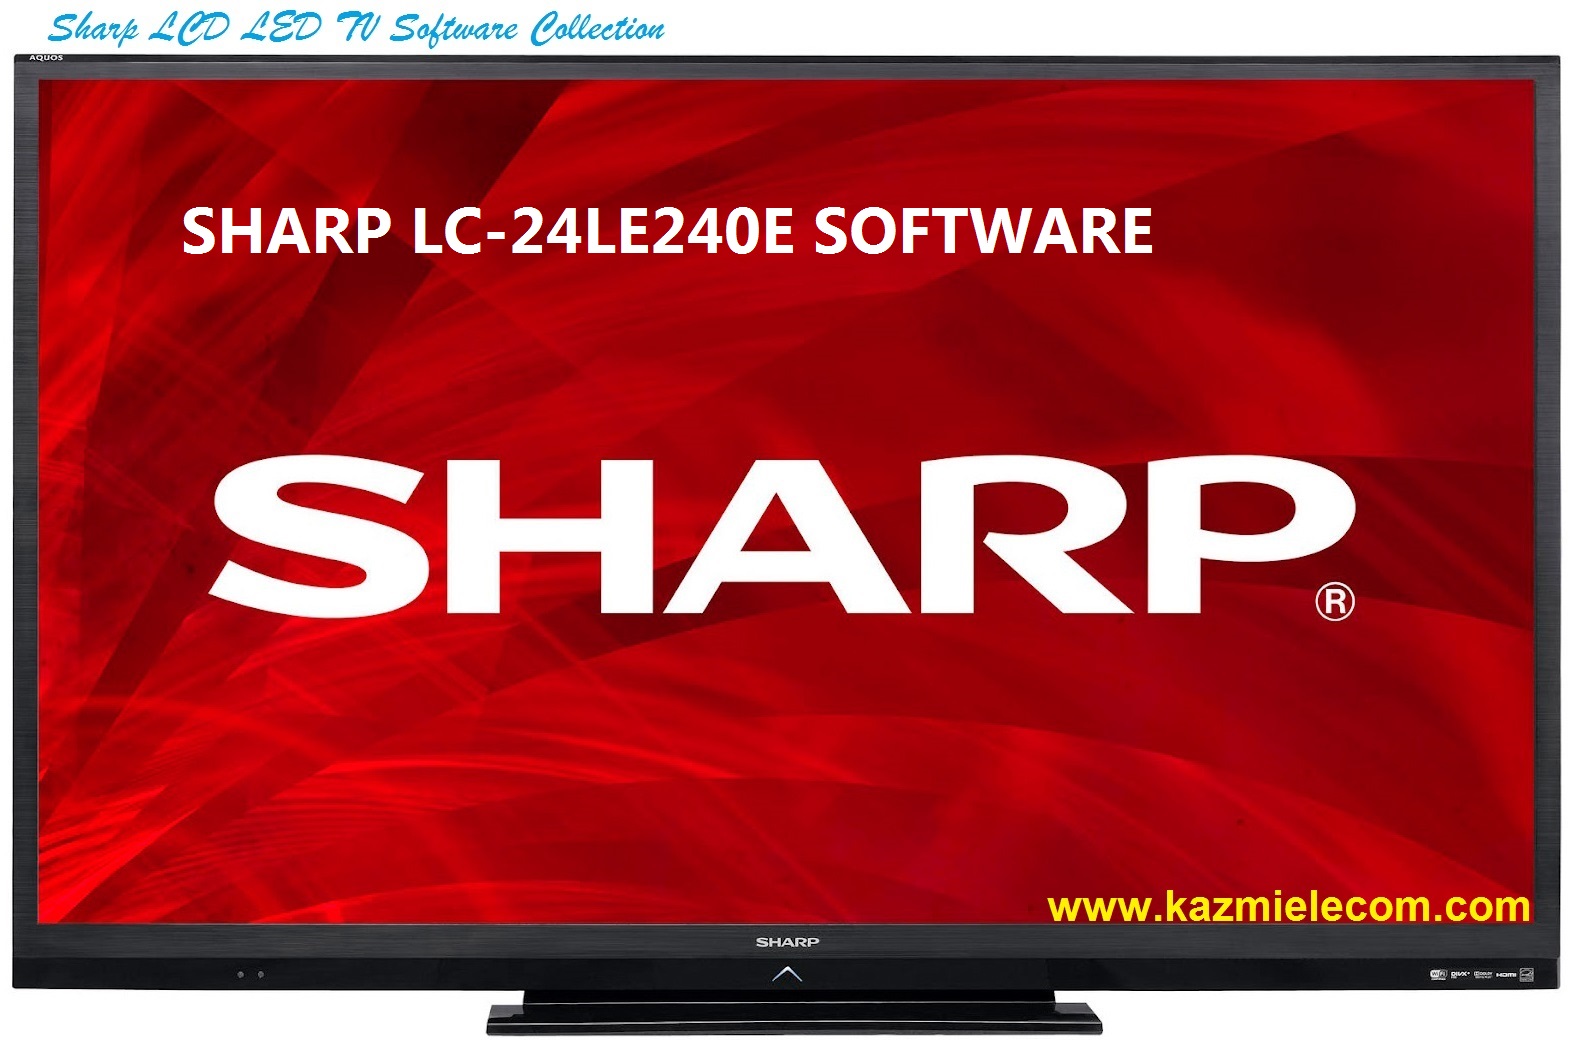 Sharp Lc-24Le240E